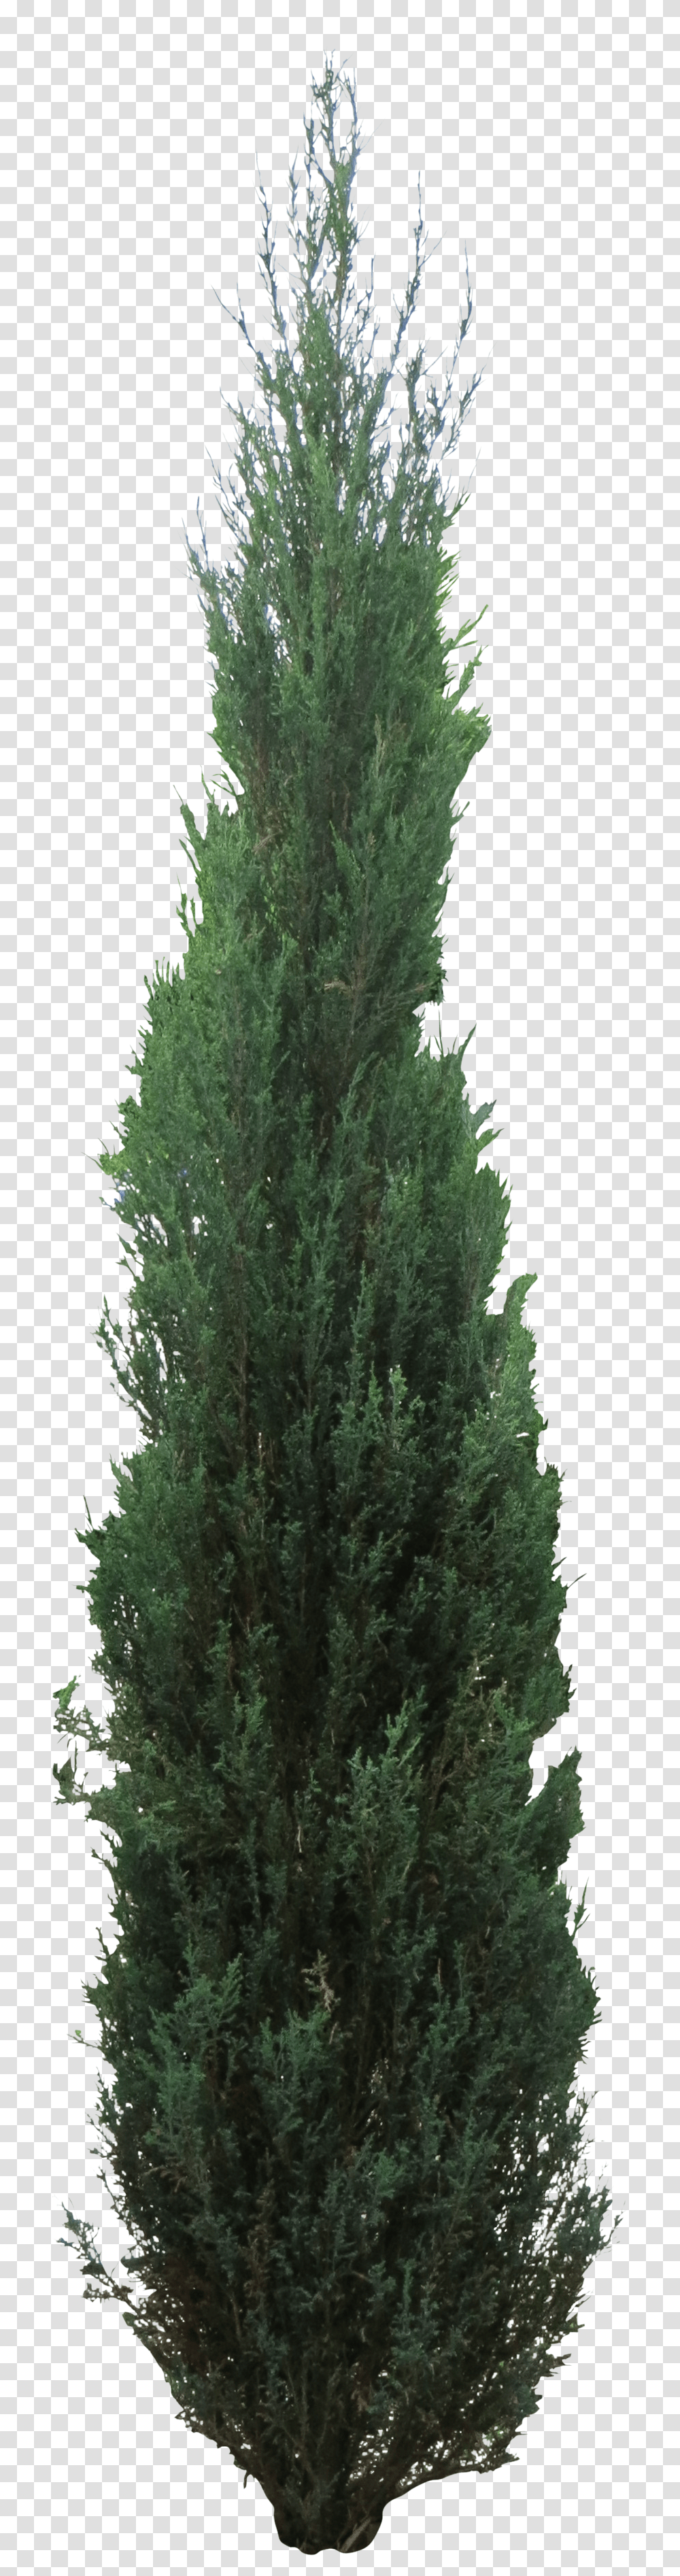 Pine Tree Clipart Juniper Tree Download Juniper Tree, Plant, Conifer, Fir, Abies Transparent Png